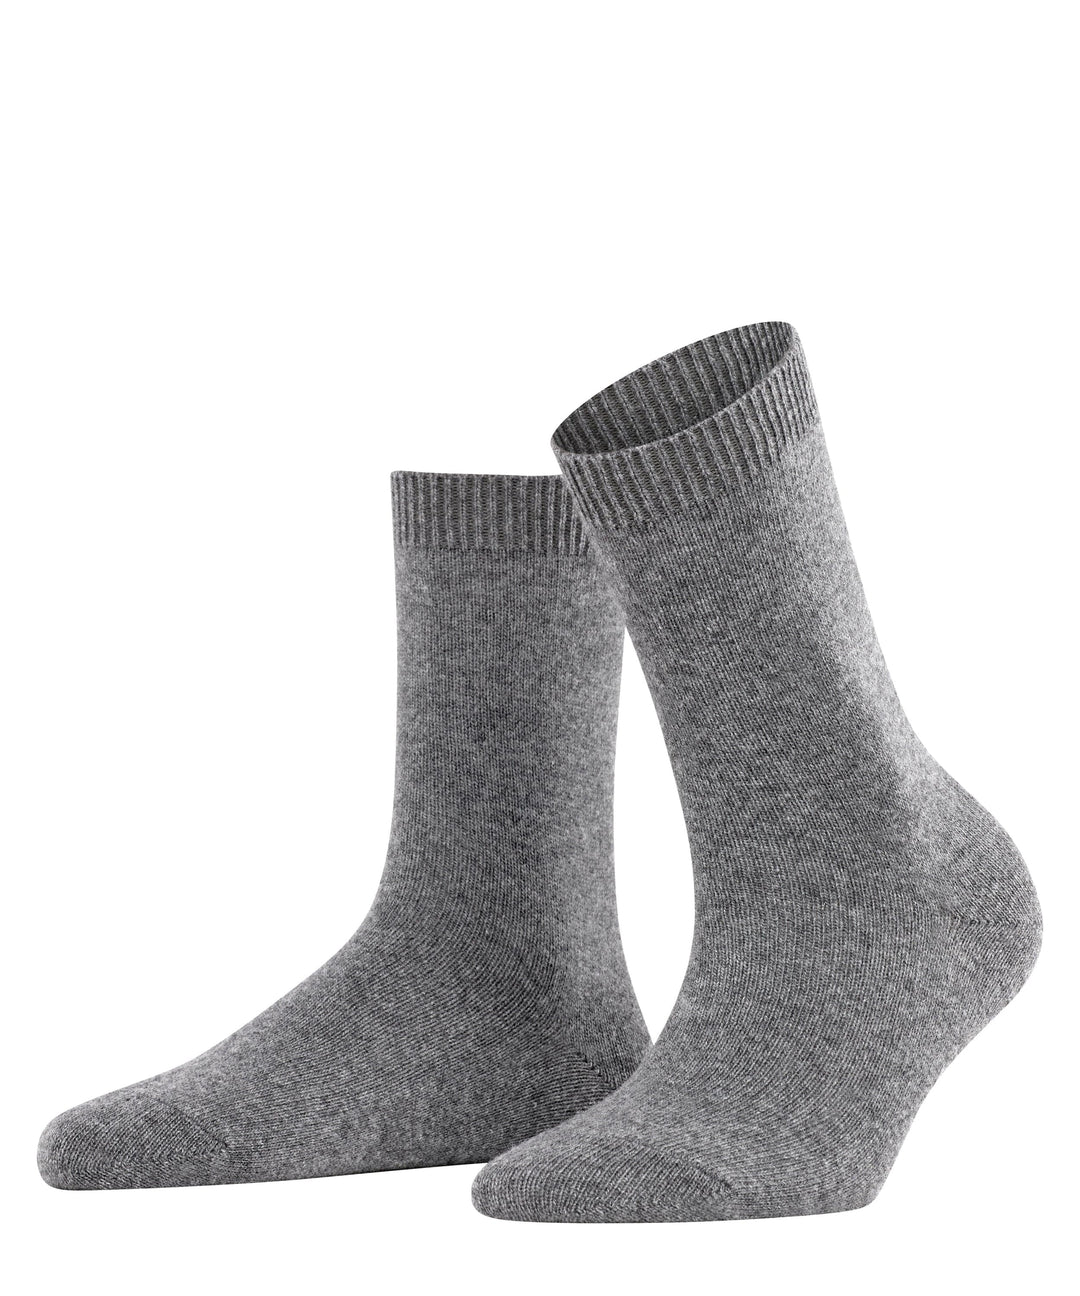 Falke Socks 5/7.5 / Light Grey Cosy Wool Women Socks